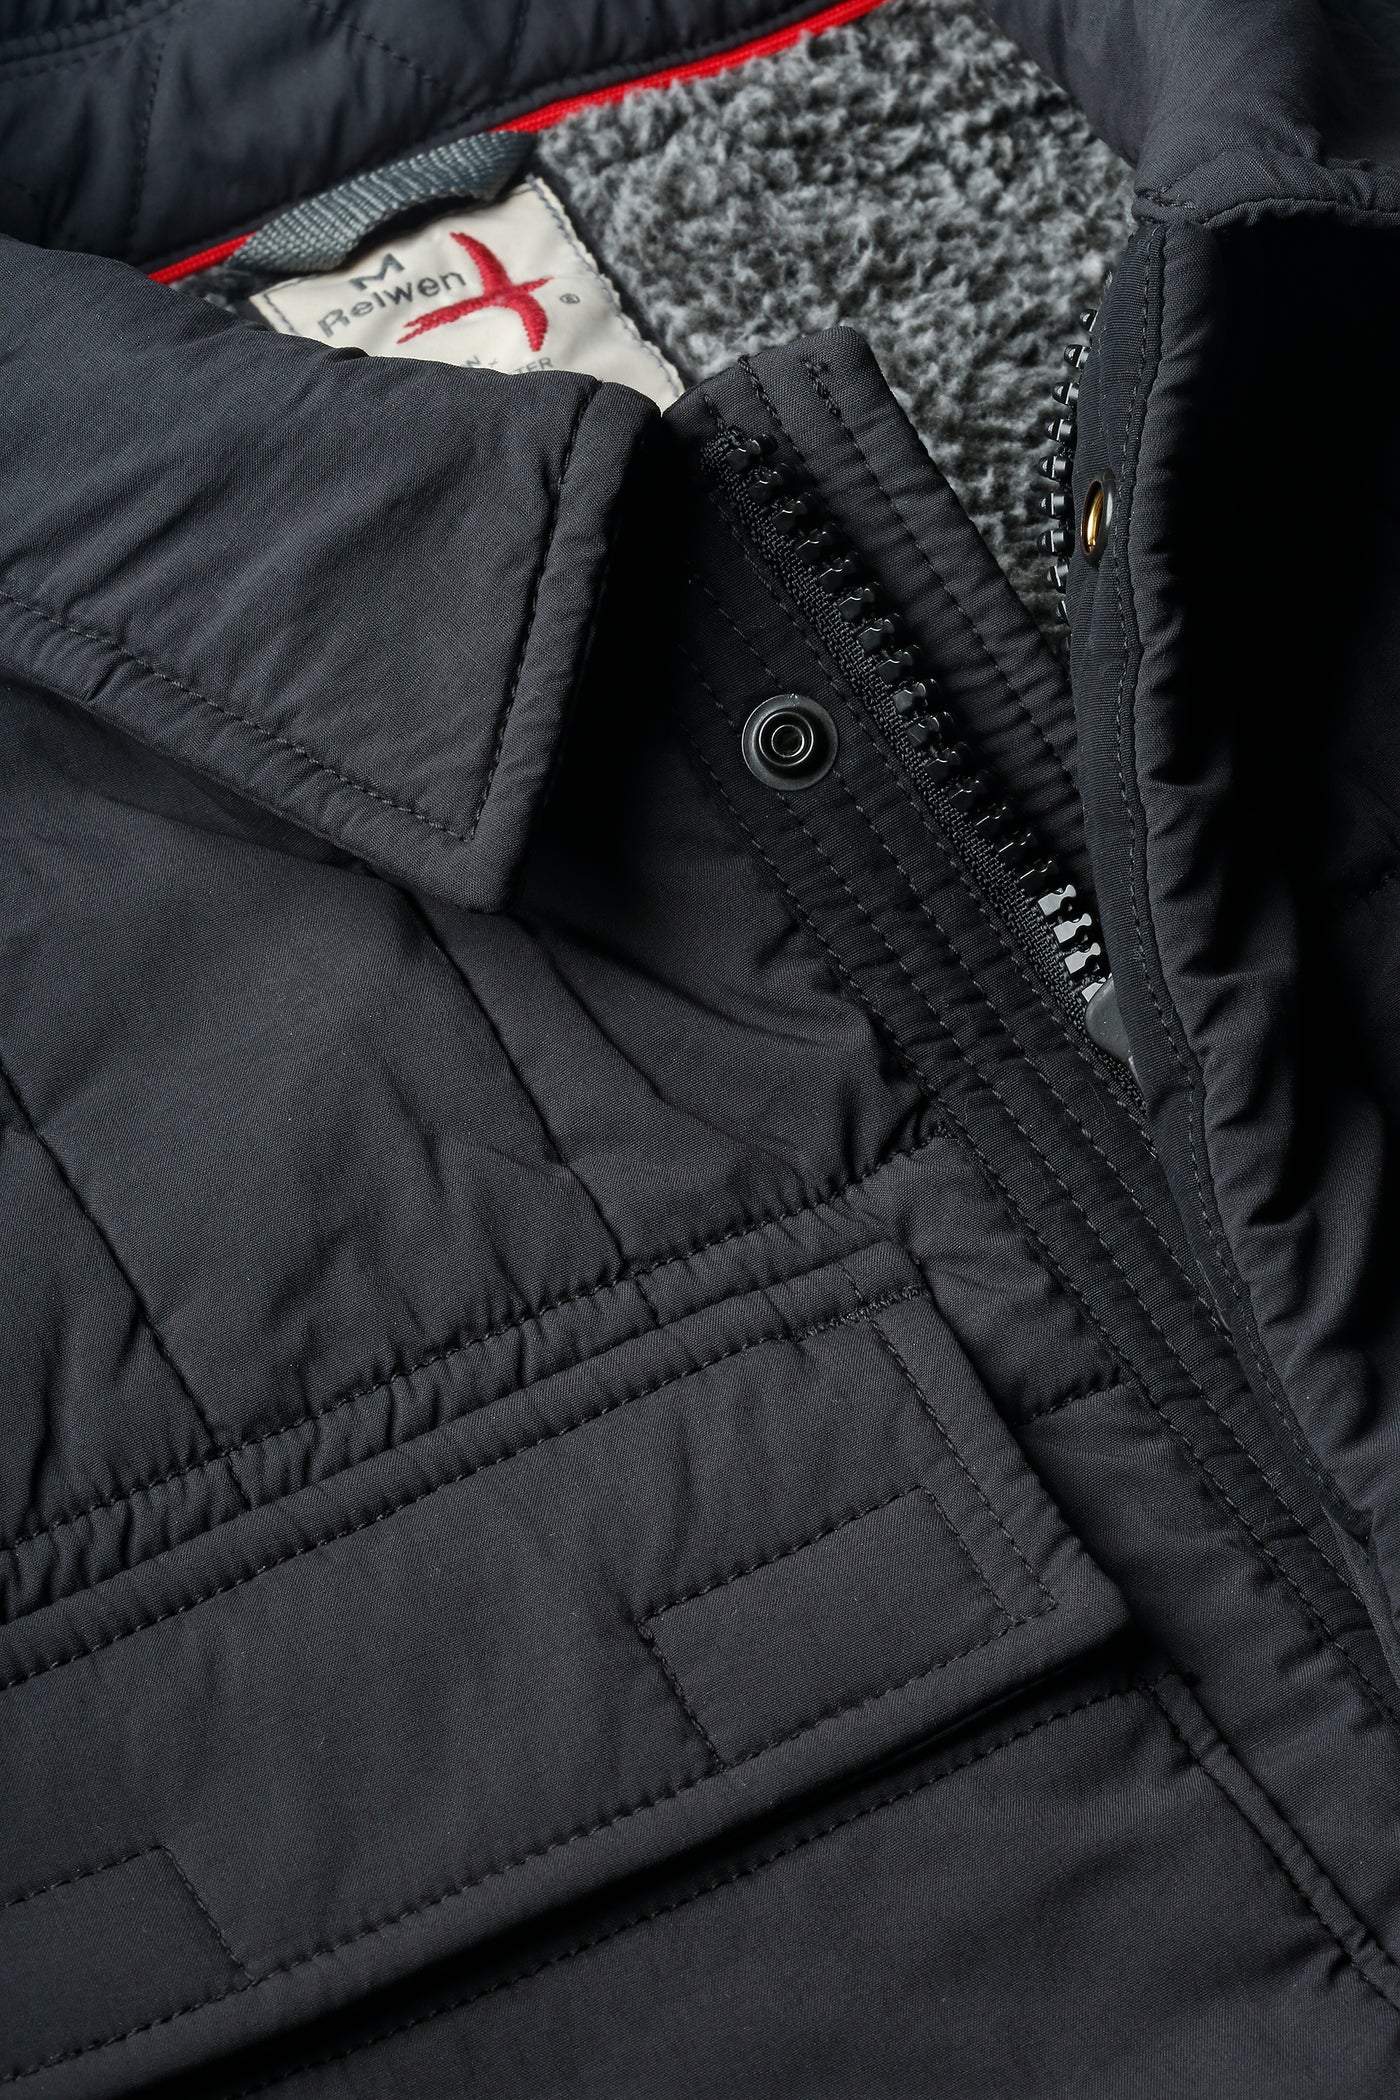 Relwen Insulated Field Jacket in Black Fade